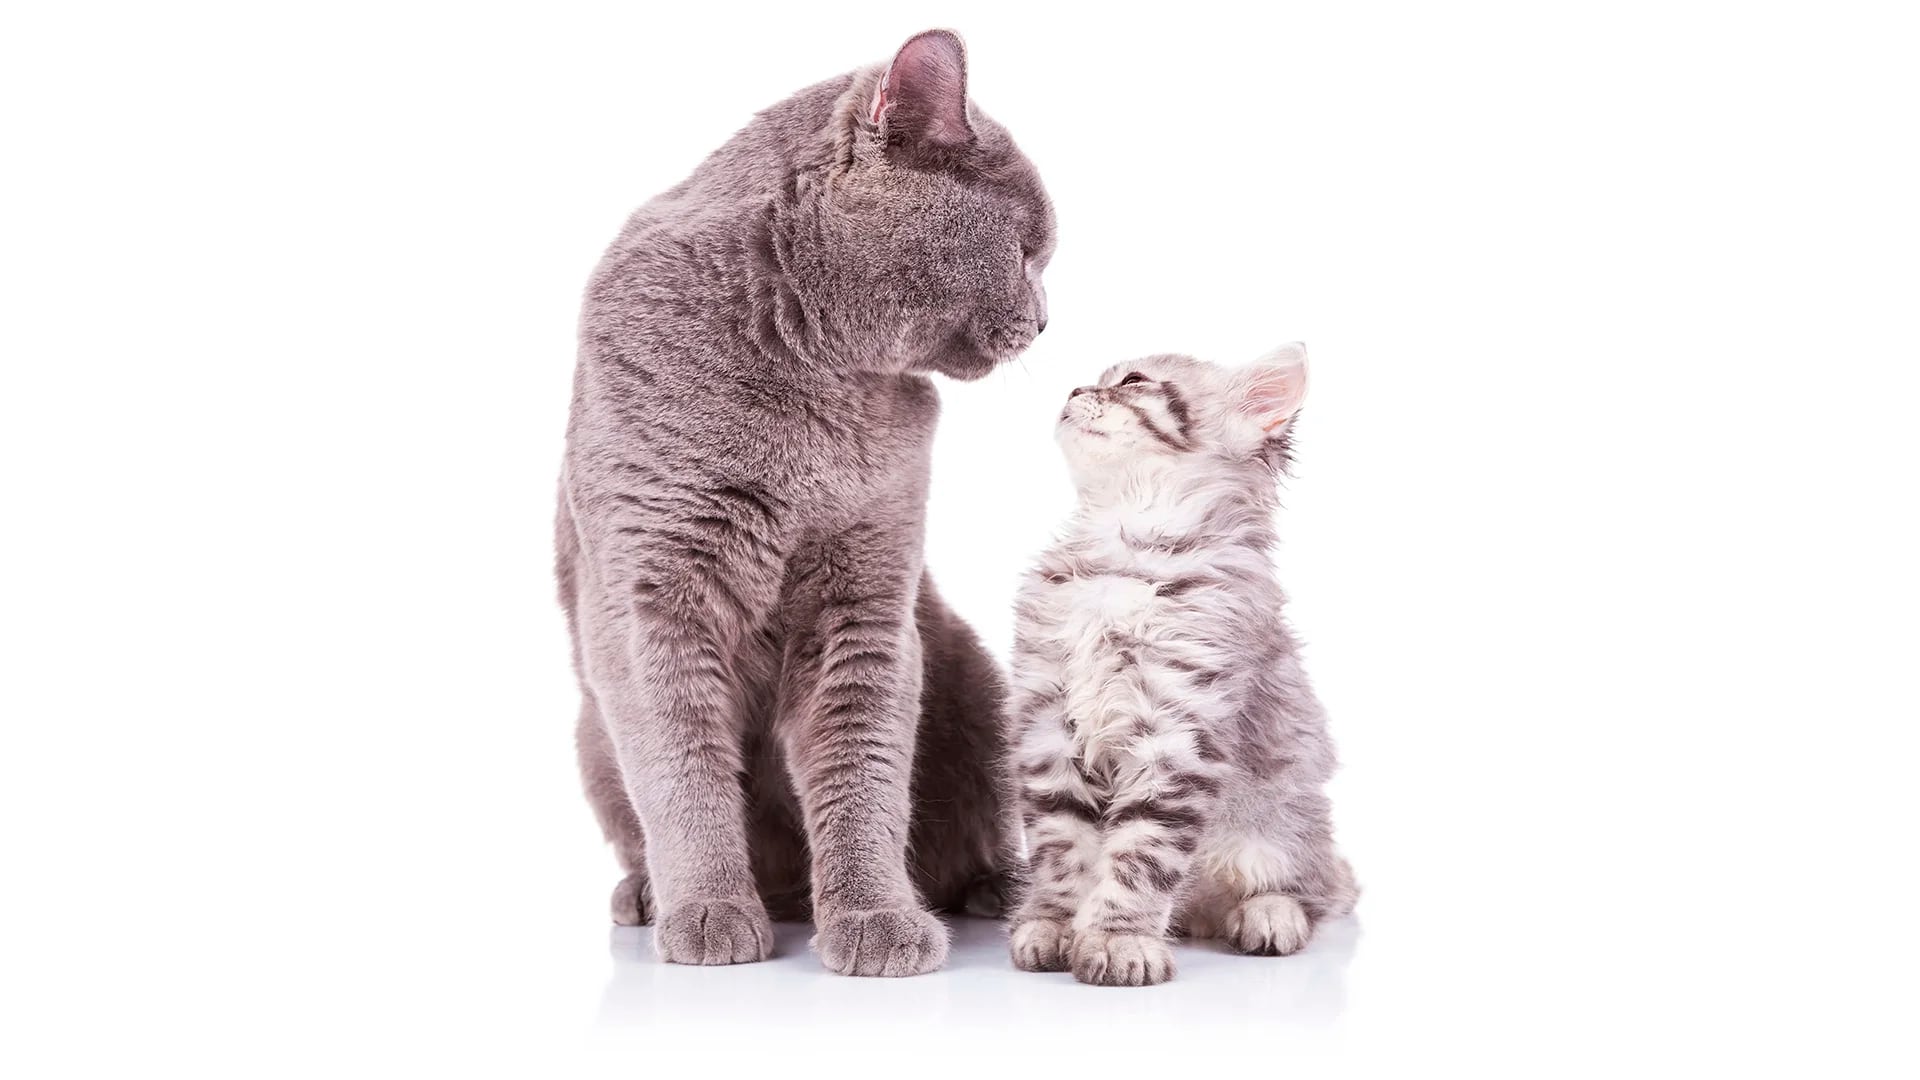 La territorialidad, uno de los grandes conflictos que enfrentan a los felinos (Shutterstock)